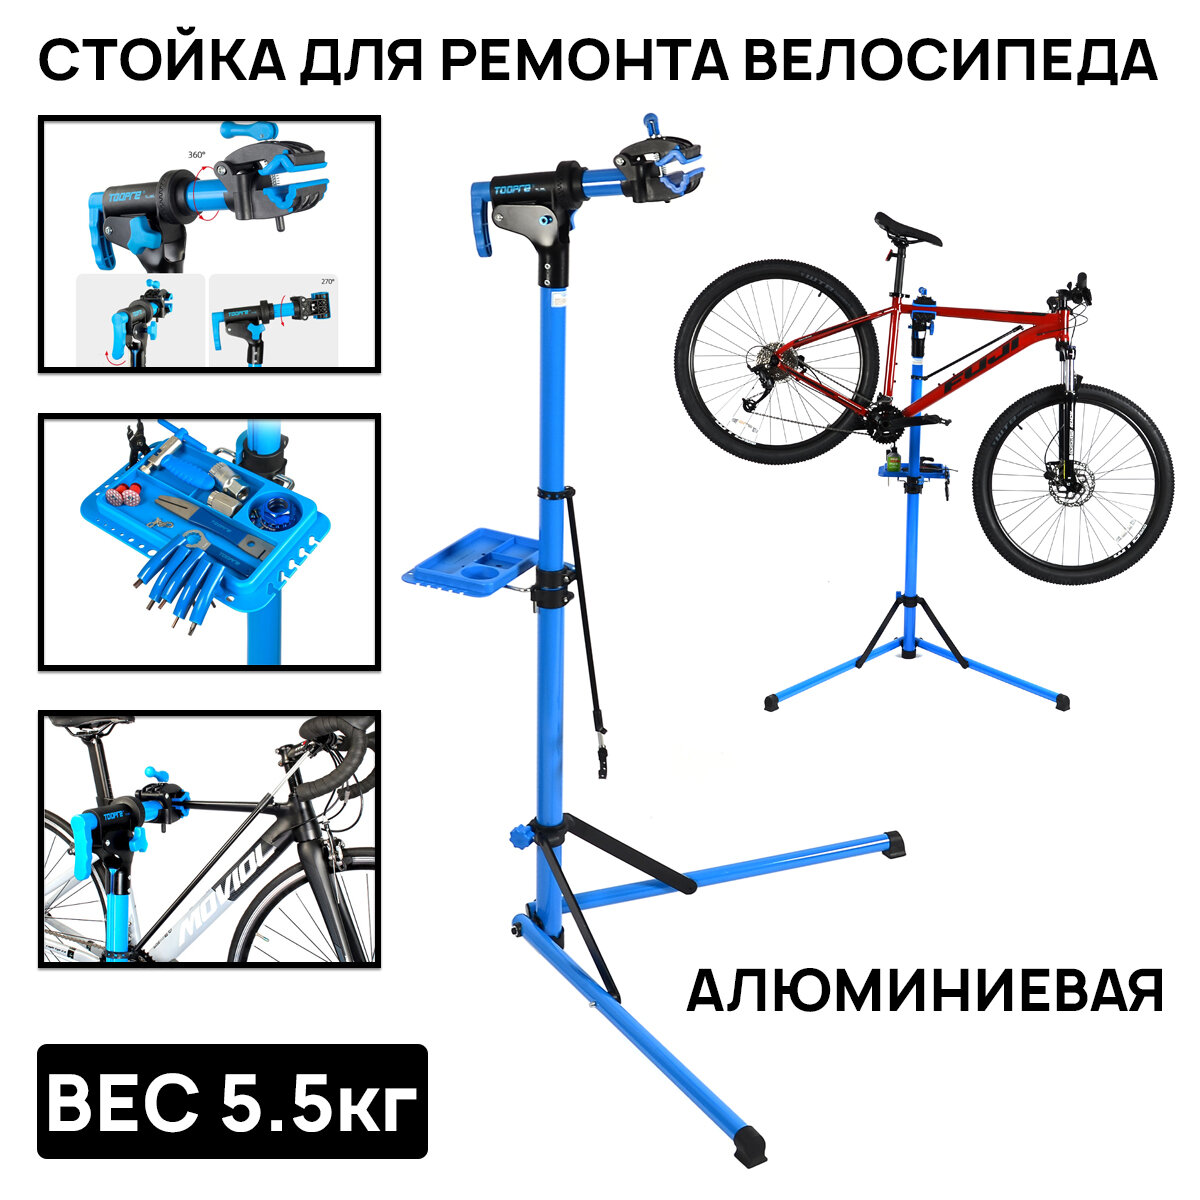 Стойка для ремонта велосипеда TL-6AL, NEW с лотком для инструментов, держателем руля, колеса, алюминиевый сплав